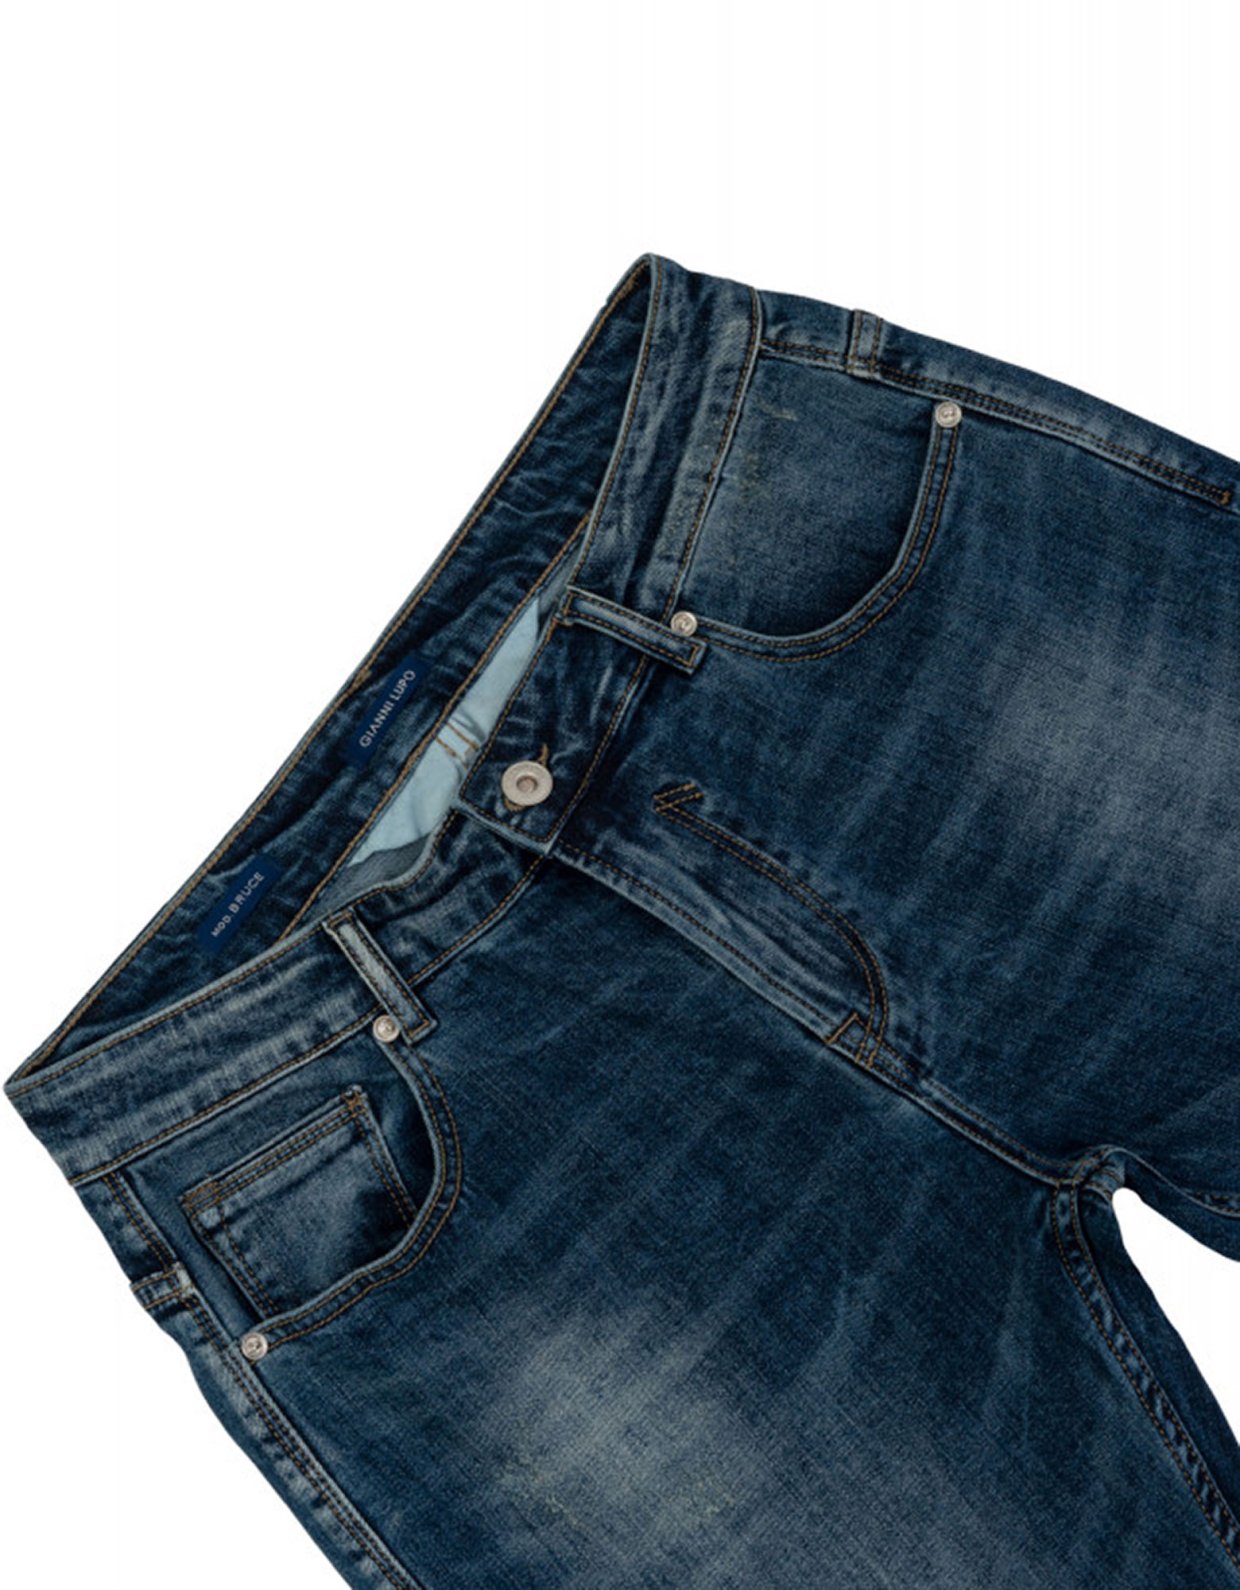 Gianni Lupo Bruce medium wash jeans